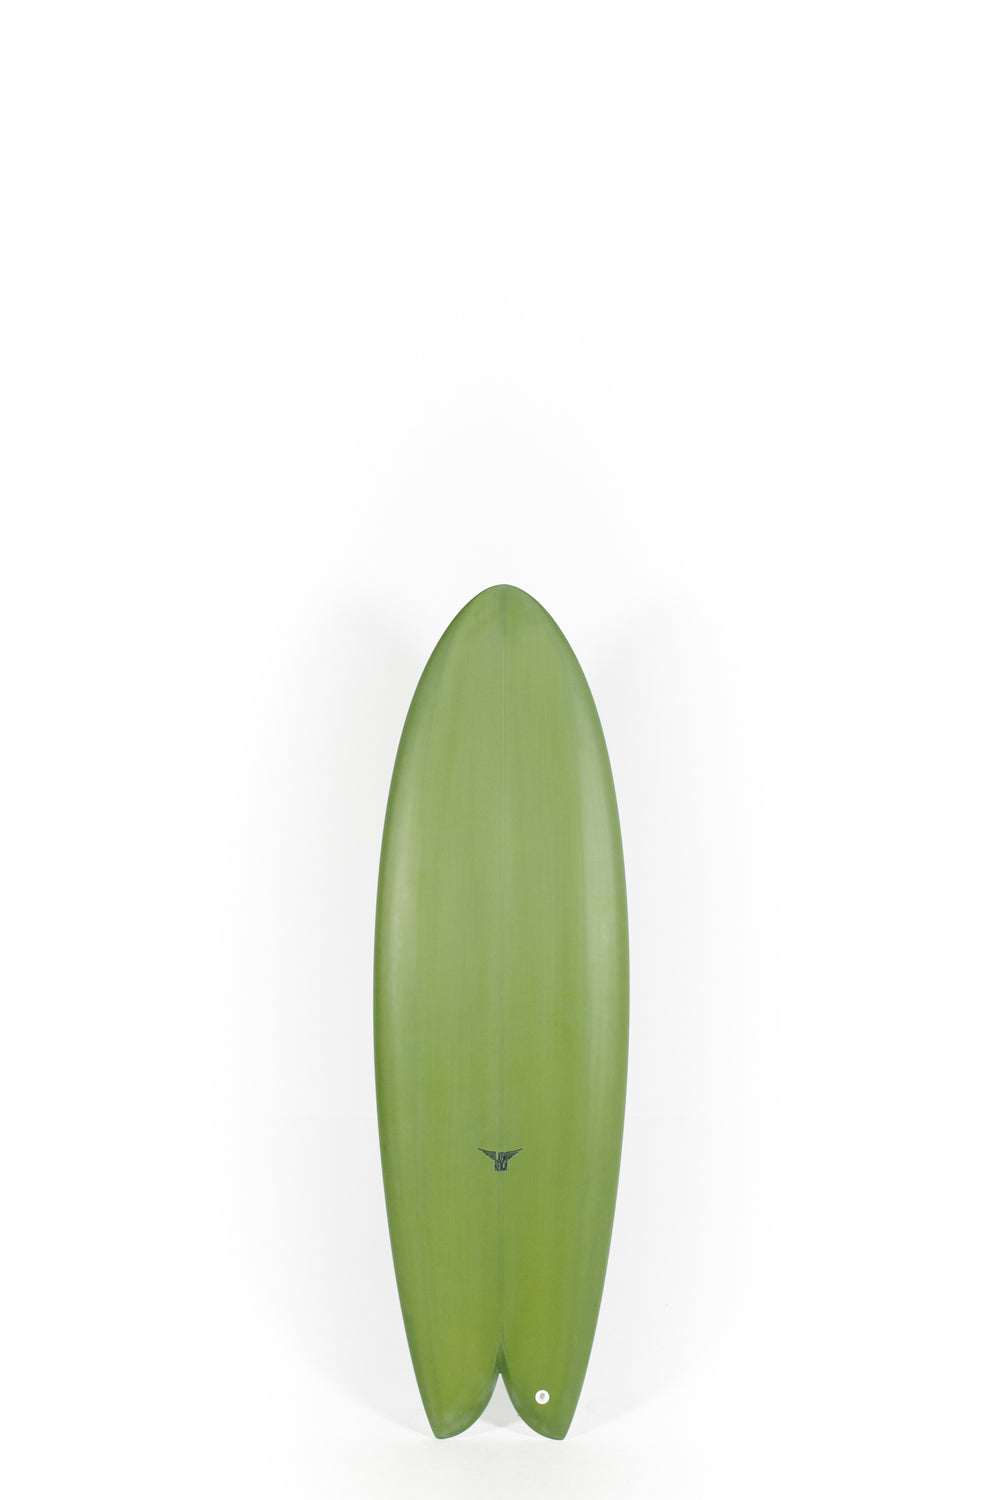 Pukas Surf Shop_Joshua Keogh Surfboard - MONAD by Joshua Keogh - 5'6